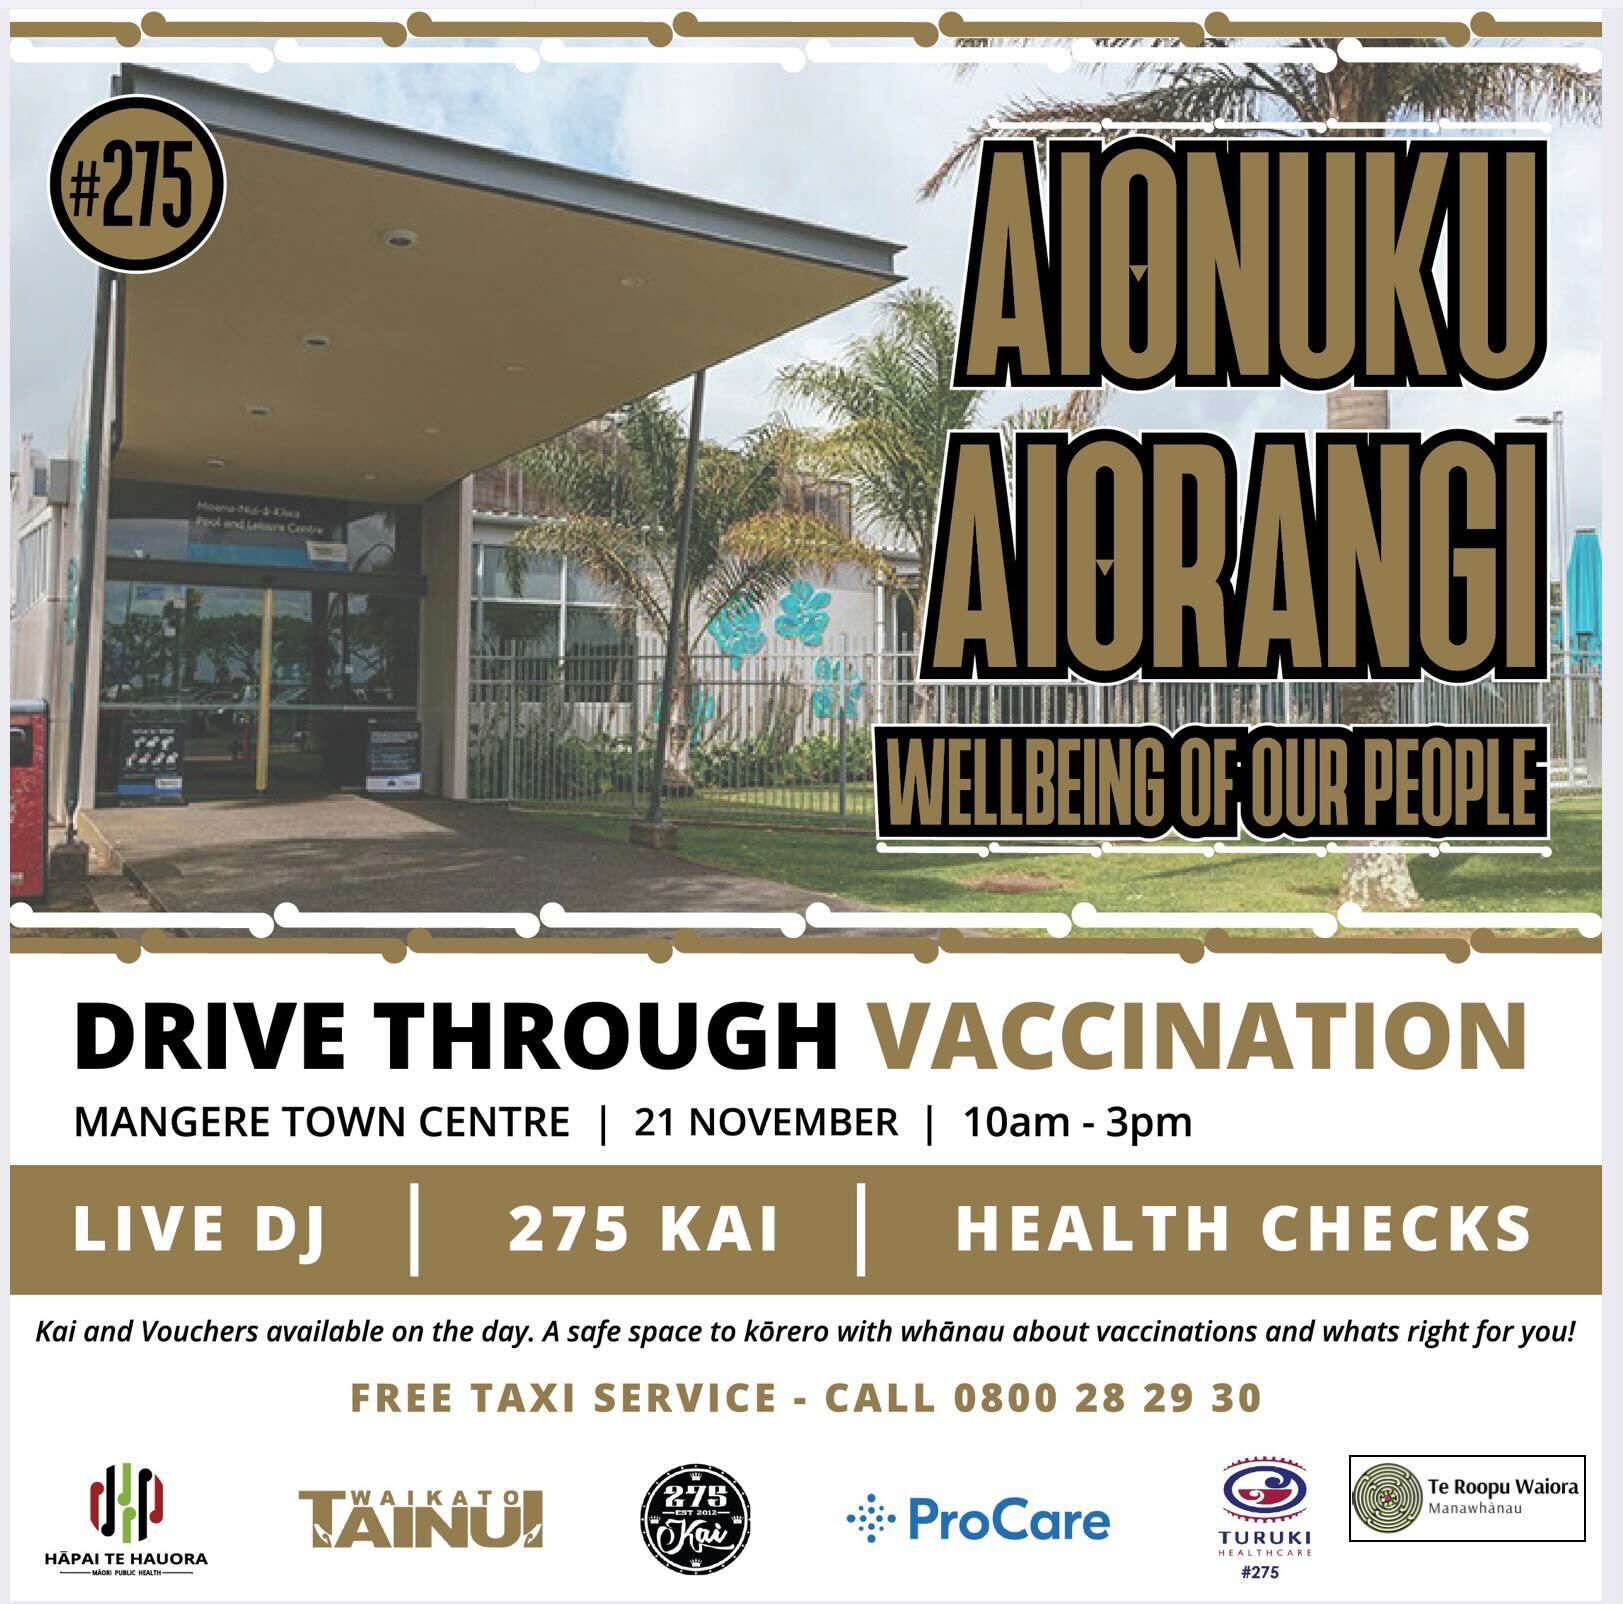 Aionuku Aiorangi, Drive Through Vaccination Poster